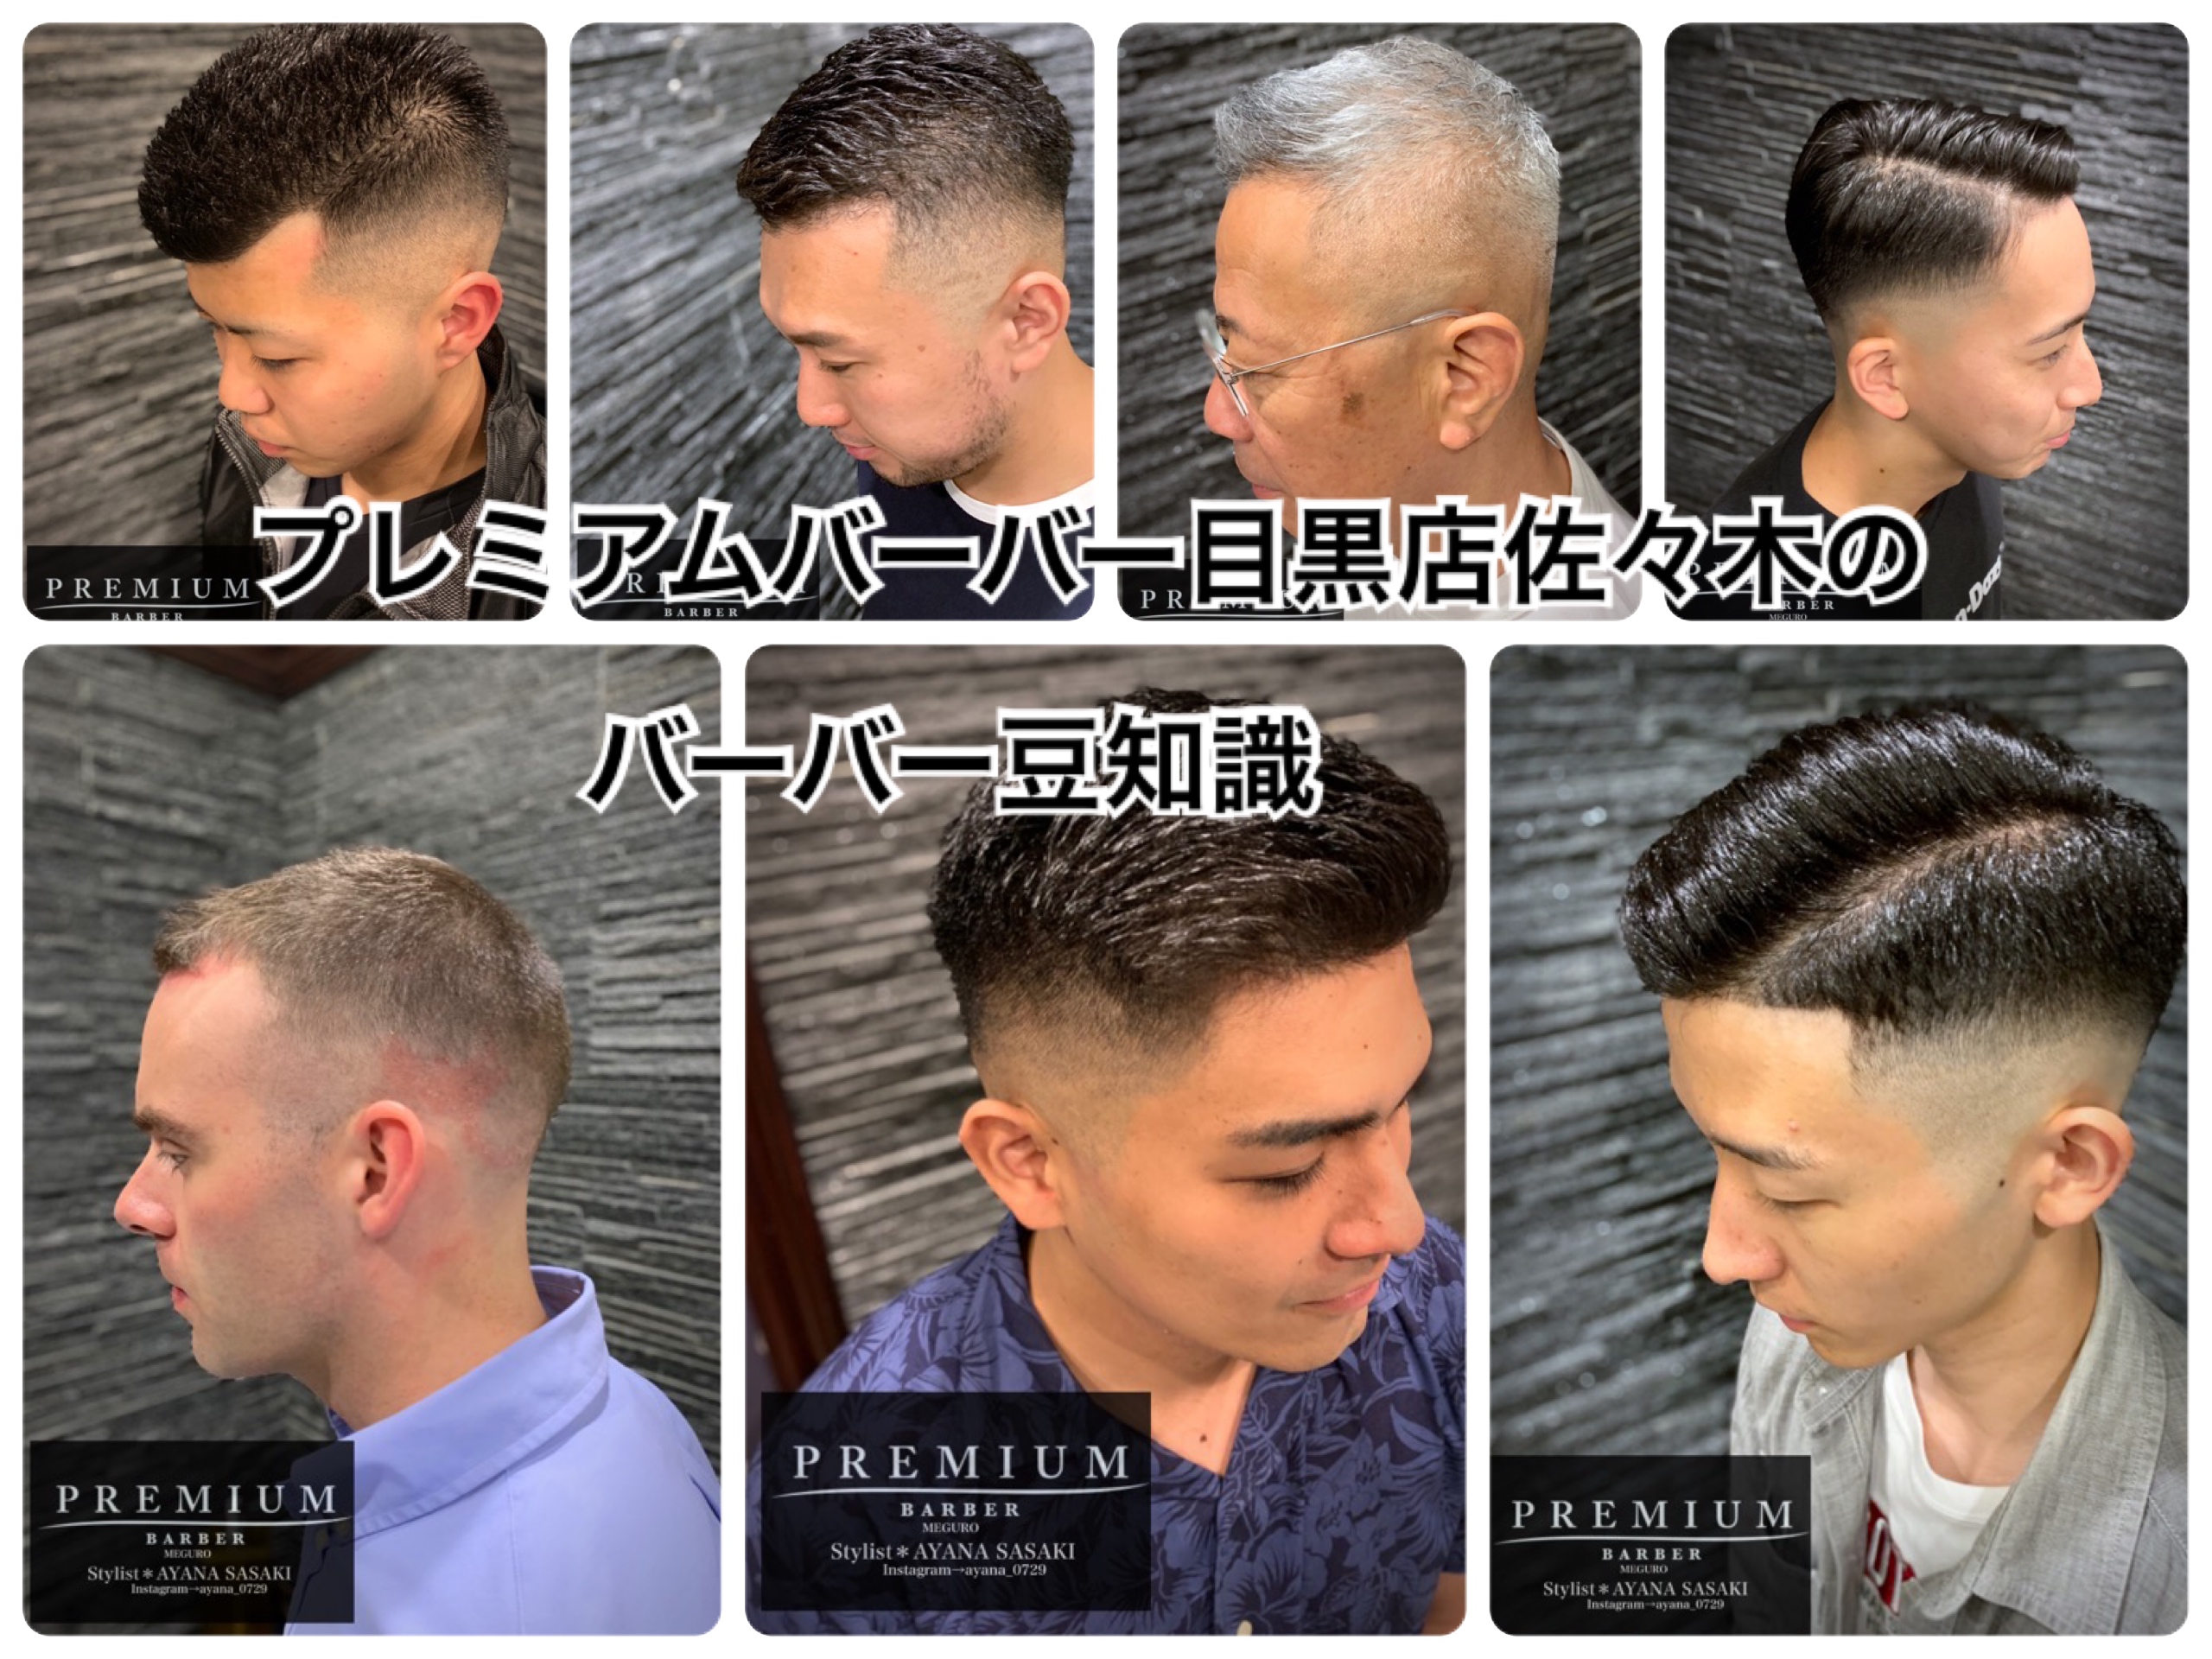 ラグビー選手の髪型 かっこいいバーバースタイル ブログ Premium Barber 渋谷原宿 高級理容室 床屋 ヒロ銀座ヘアーサロン